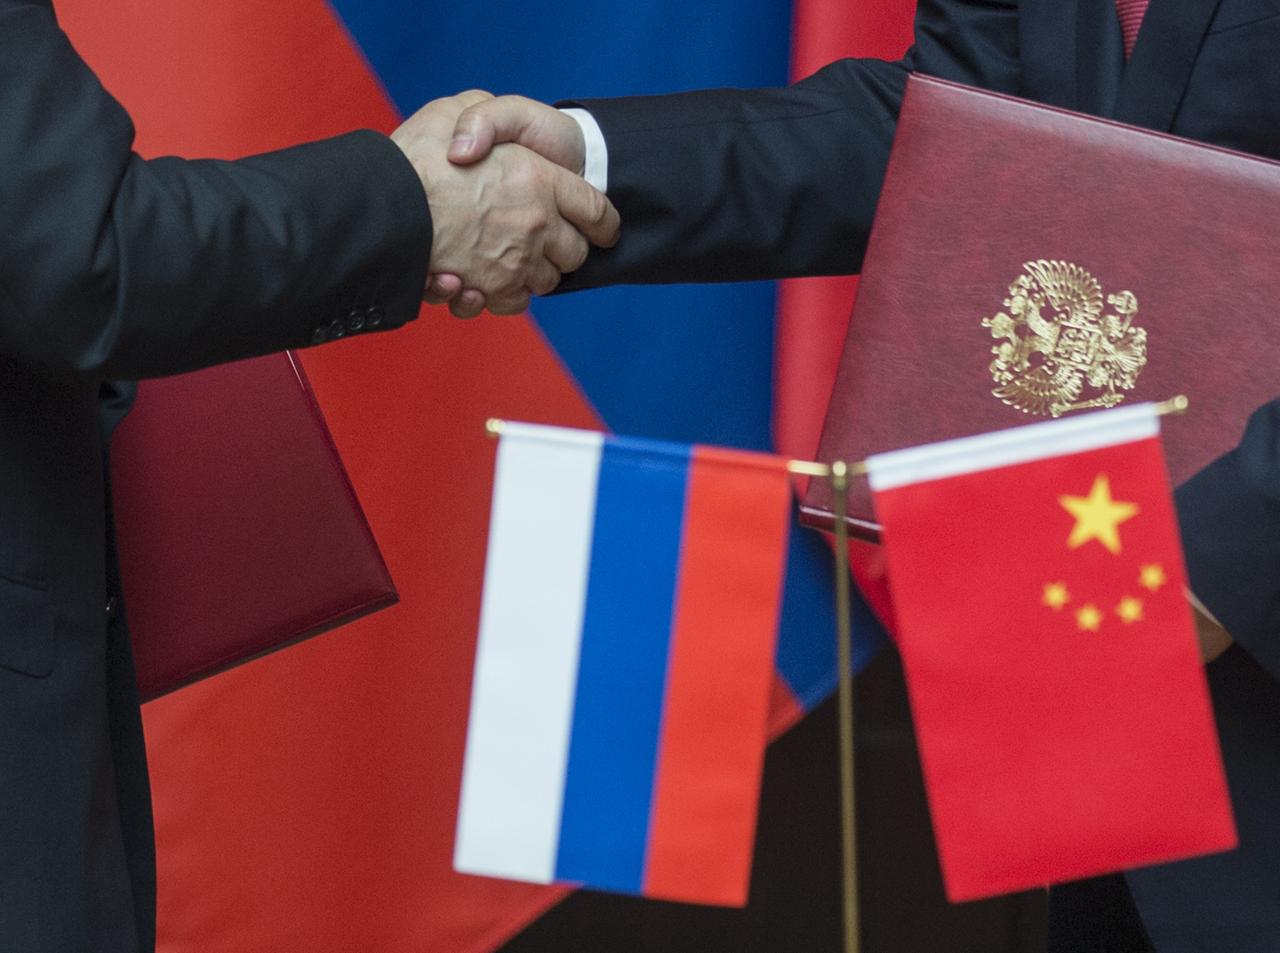 Wladimir Putin und Xi Jinping beim Handschlag